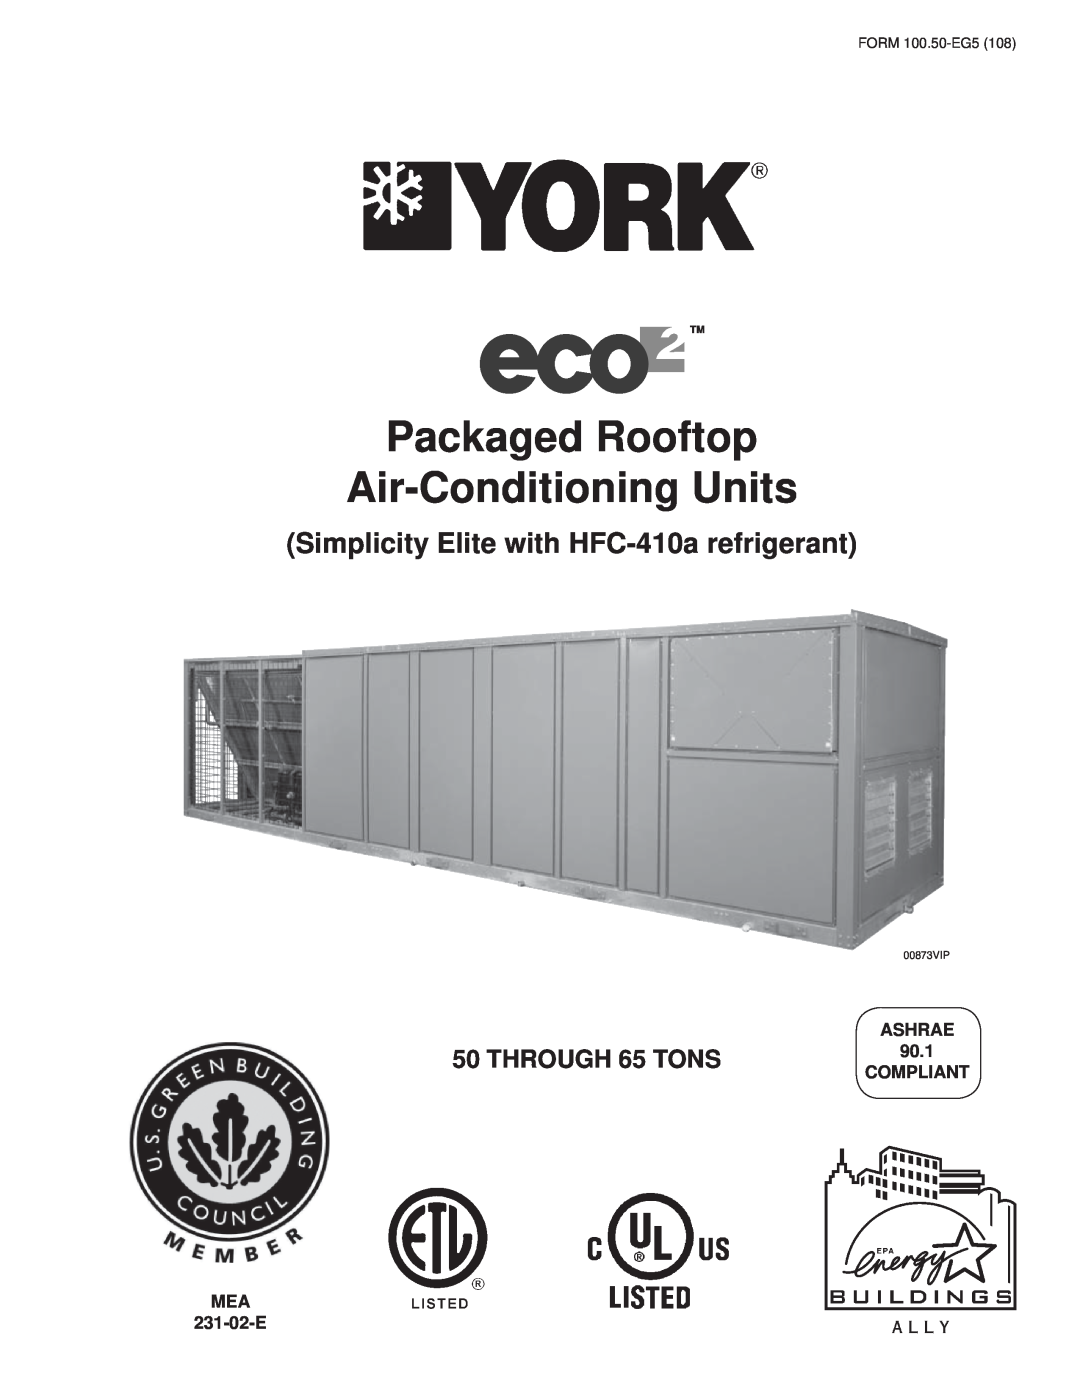 York HFC-410A manual Simplicity Elite with HFC-410arefrigerant, THROUGH 65 TONS, ASHRAE 90.1 COMPLIANT, MEA 231-02-E 